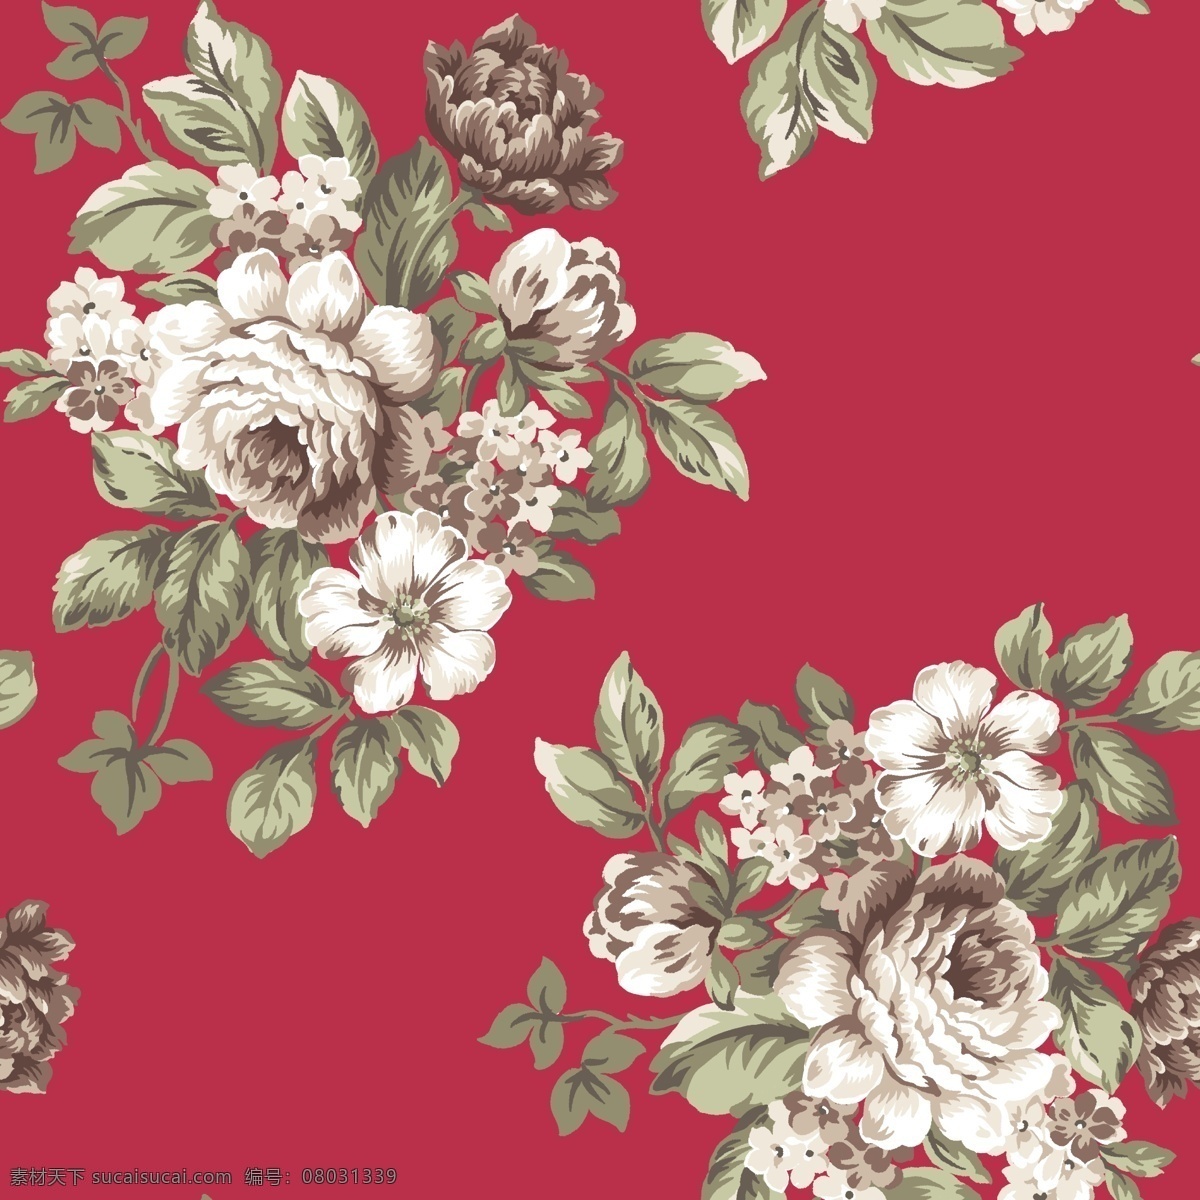 大花 抽象花 手绘花 中国画花卉 水彩花卉 创意花卉 印花素材 高清 服装图案素材 家纺图案素材